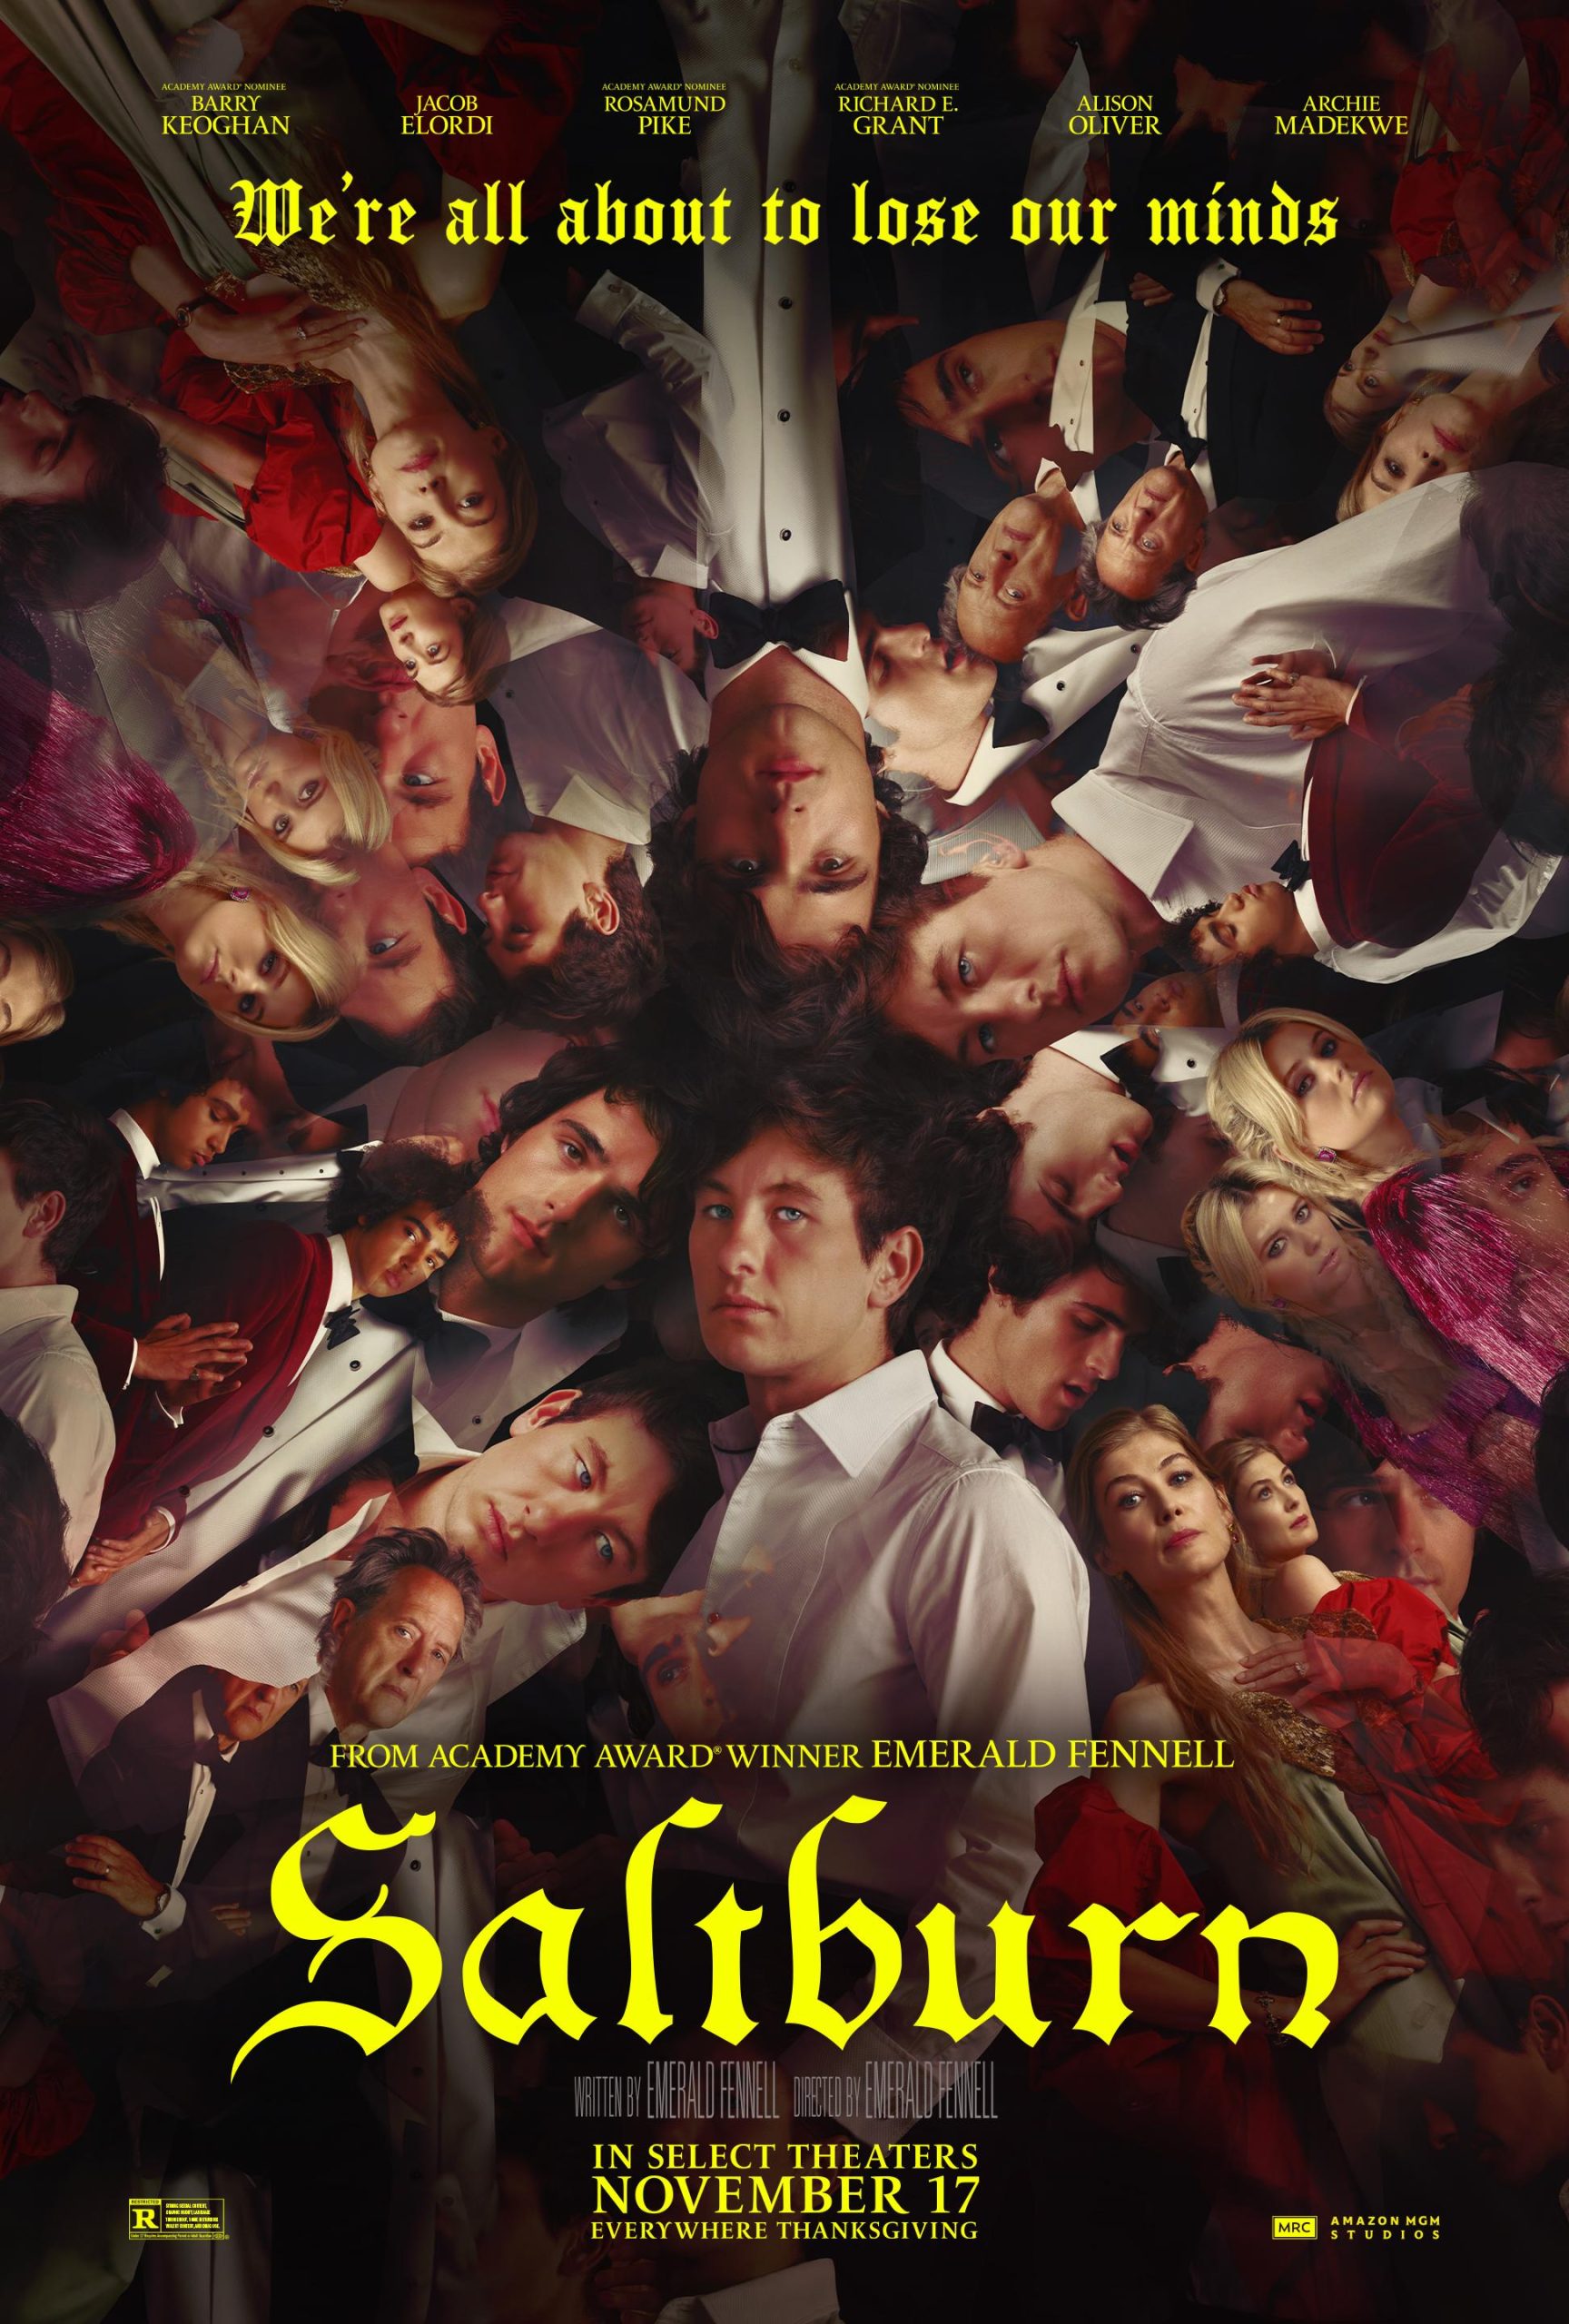 H Aφίσα για την ταινία "Saltburn" της Emerald Fennell